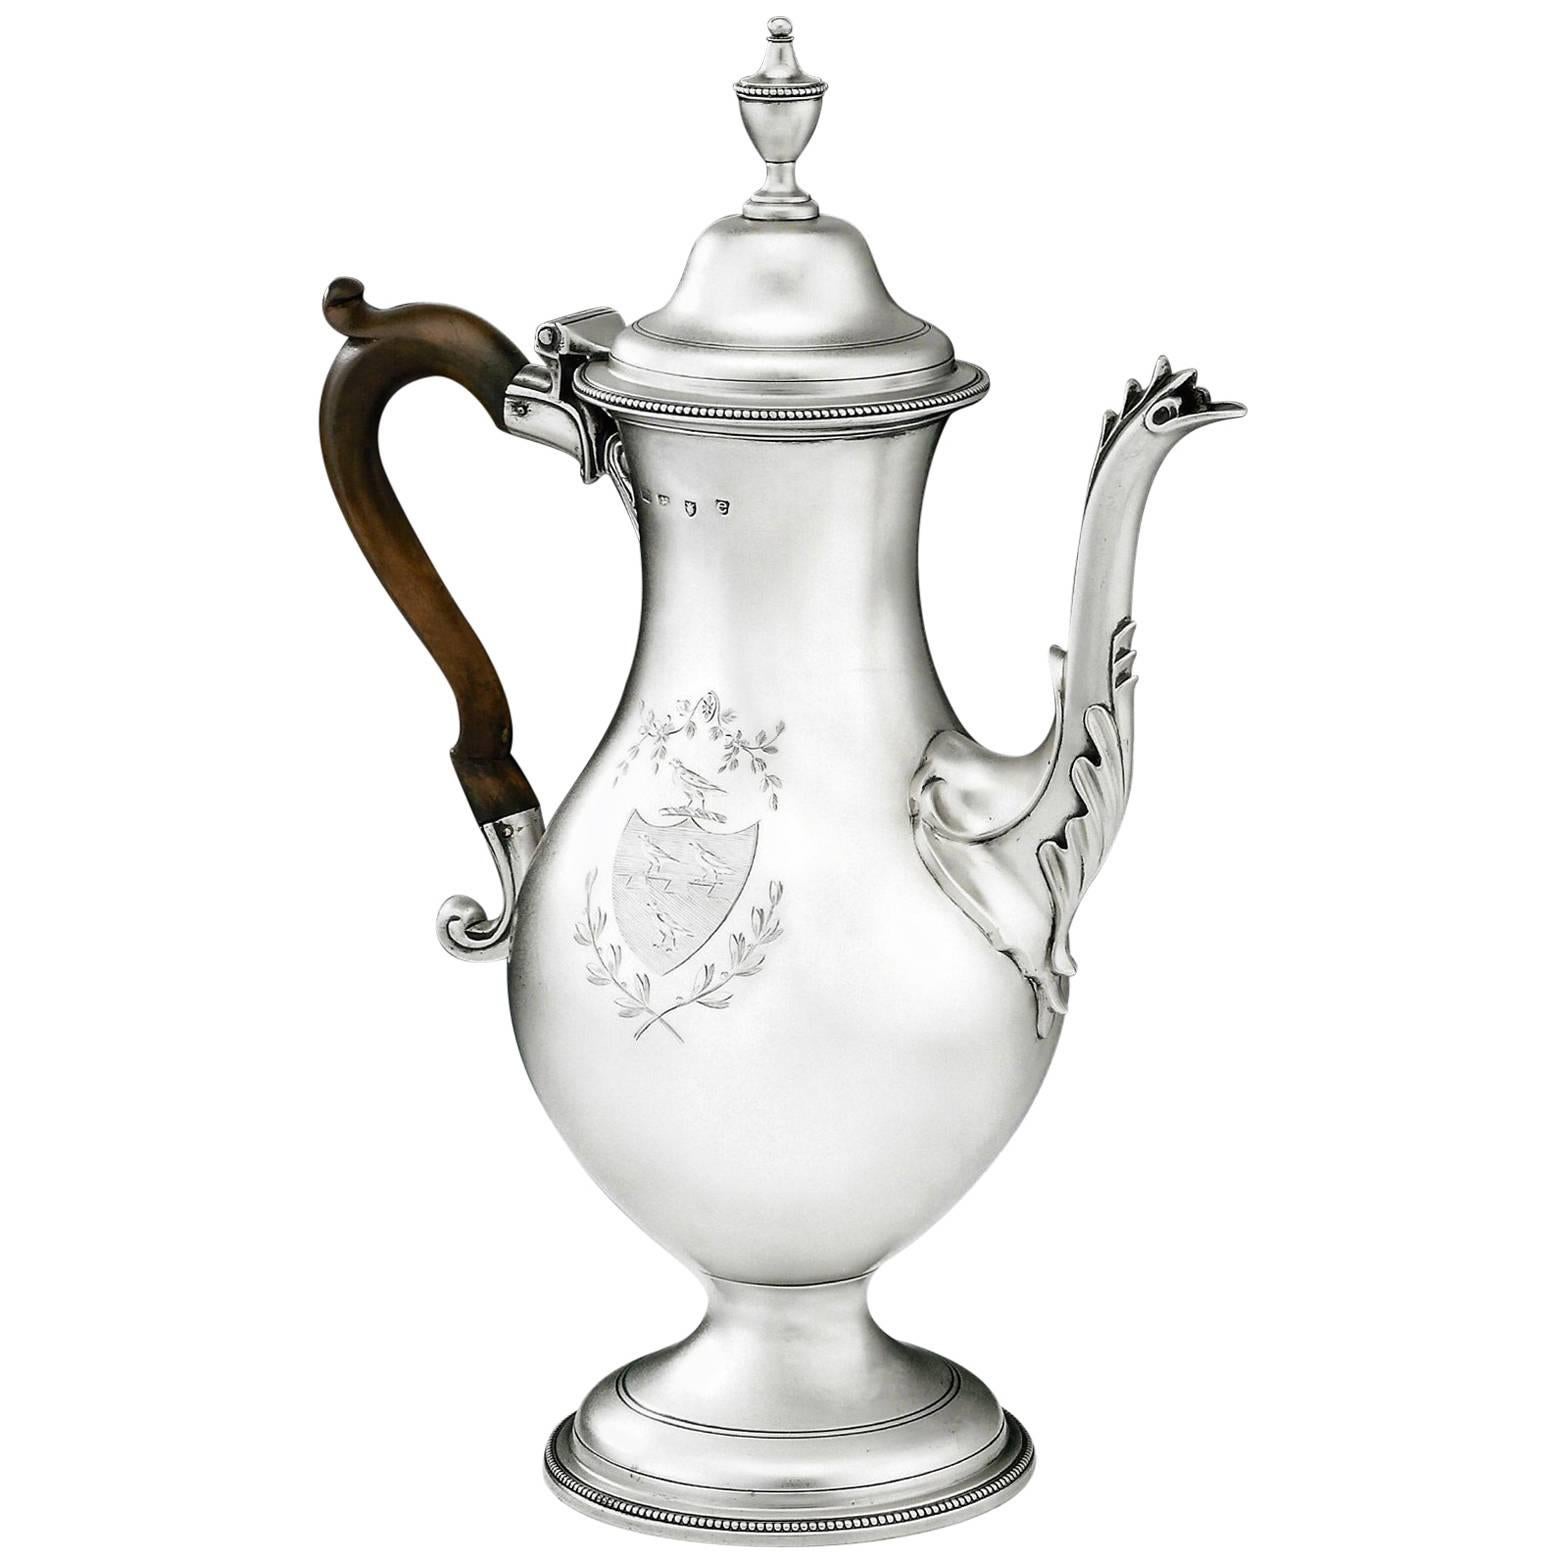 HESTER BATEMAN. George III Coffee Pot made in London in 1780 by Hester Bateman.